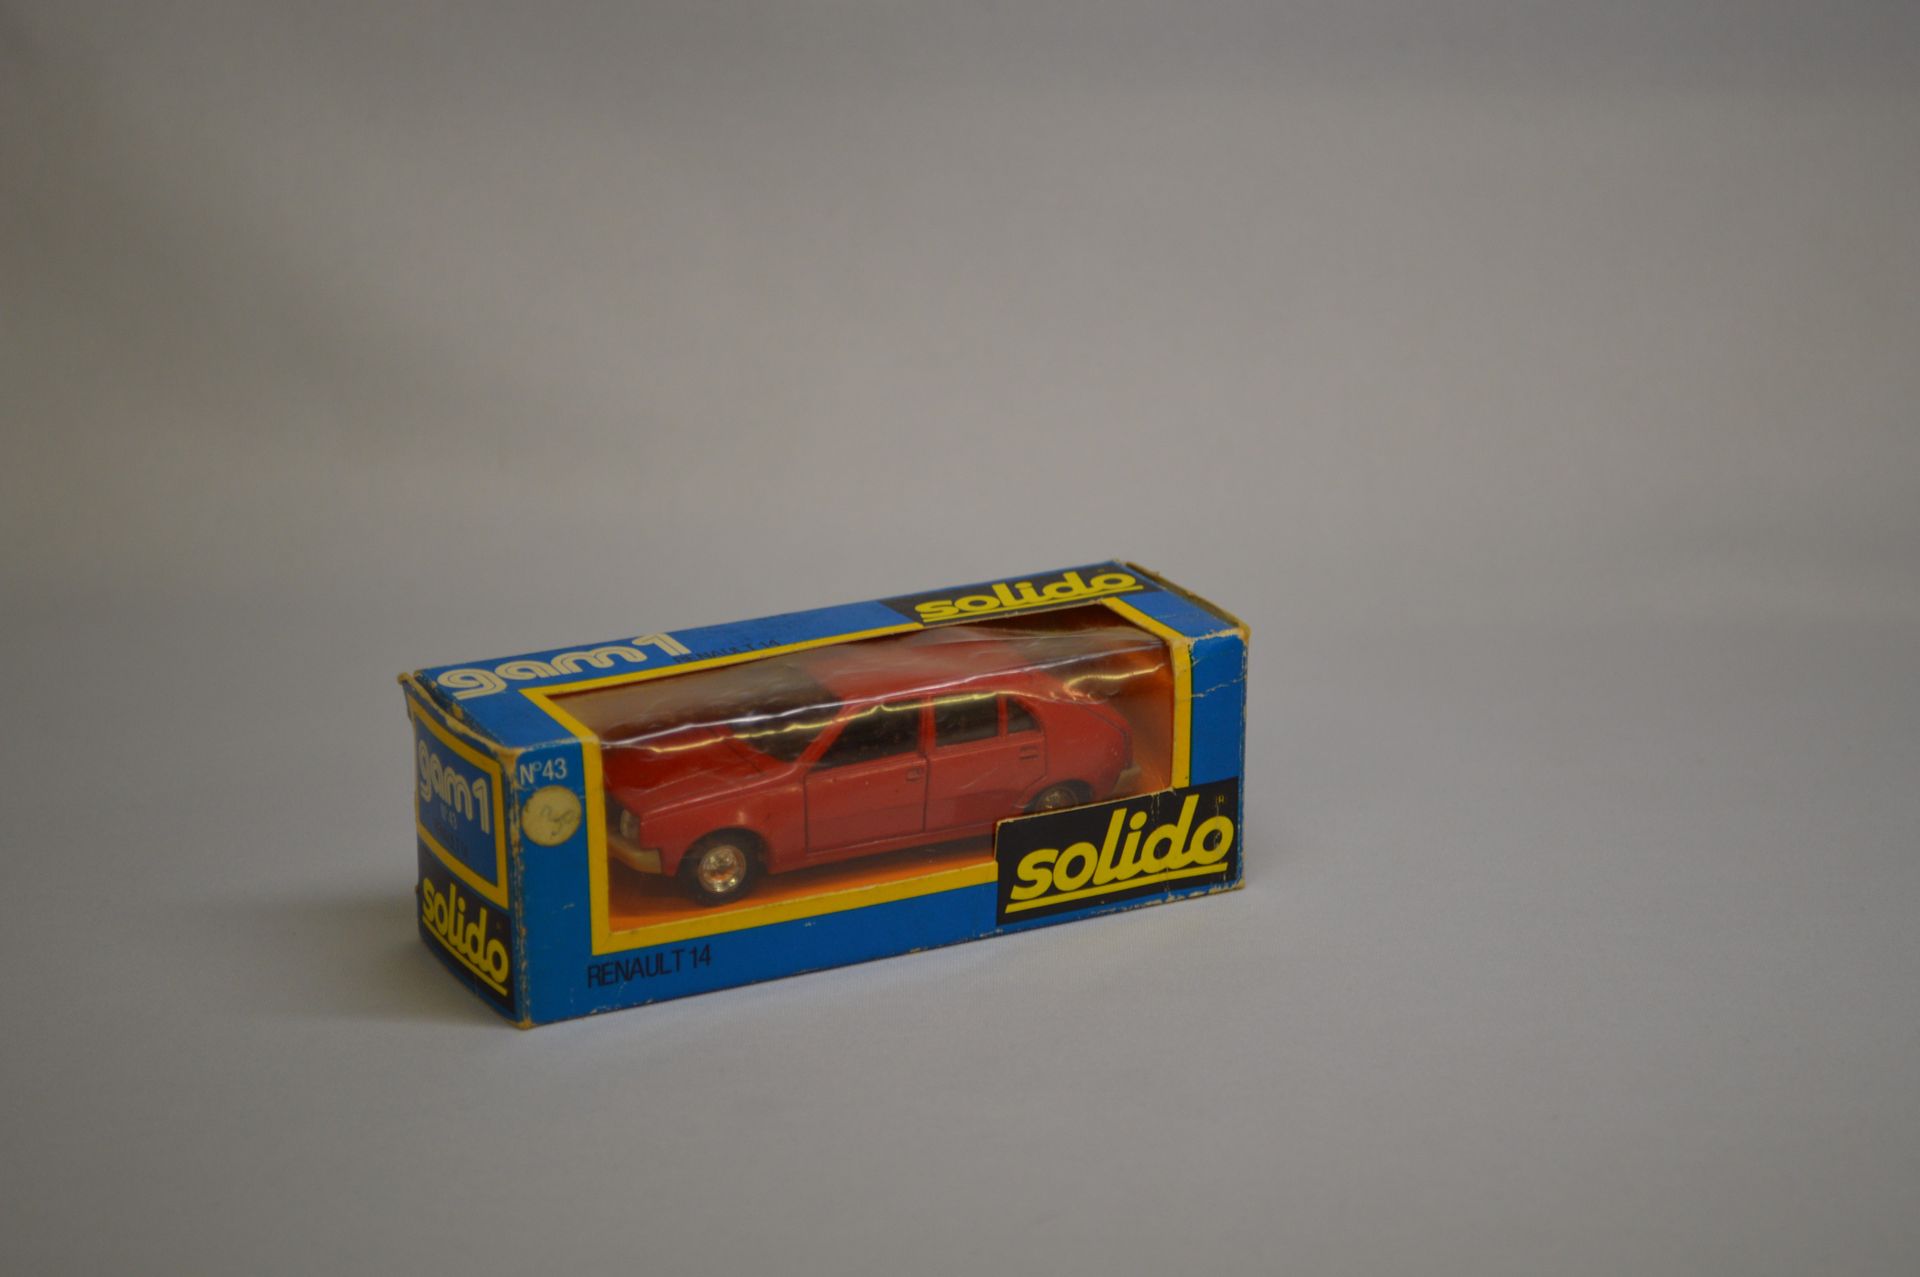 Null SOLIDO - GAM 1 - 房车：雷诺14，编号43，红色。

原装盒。出处：一位伟大收藏家的遗产。